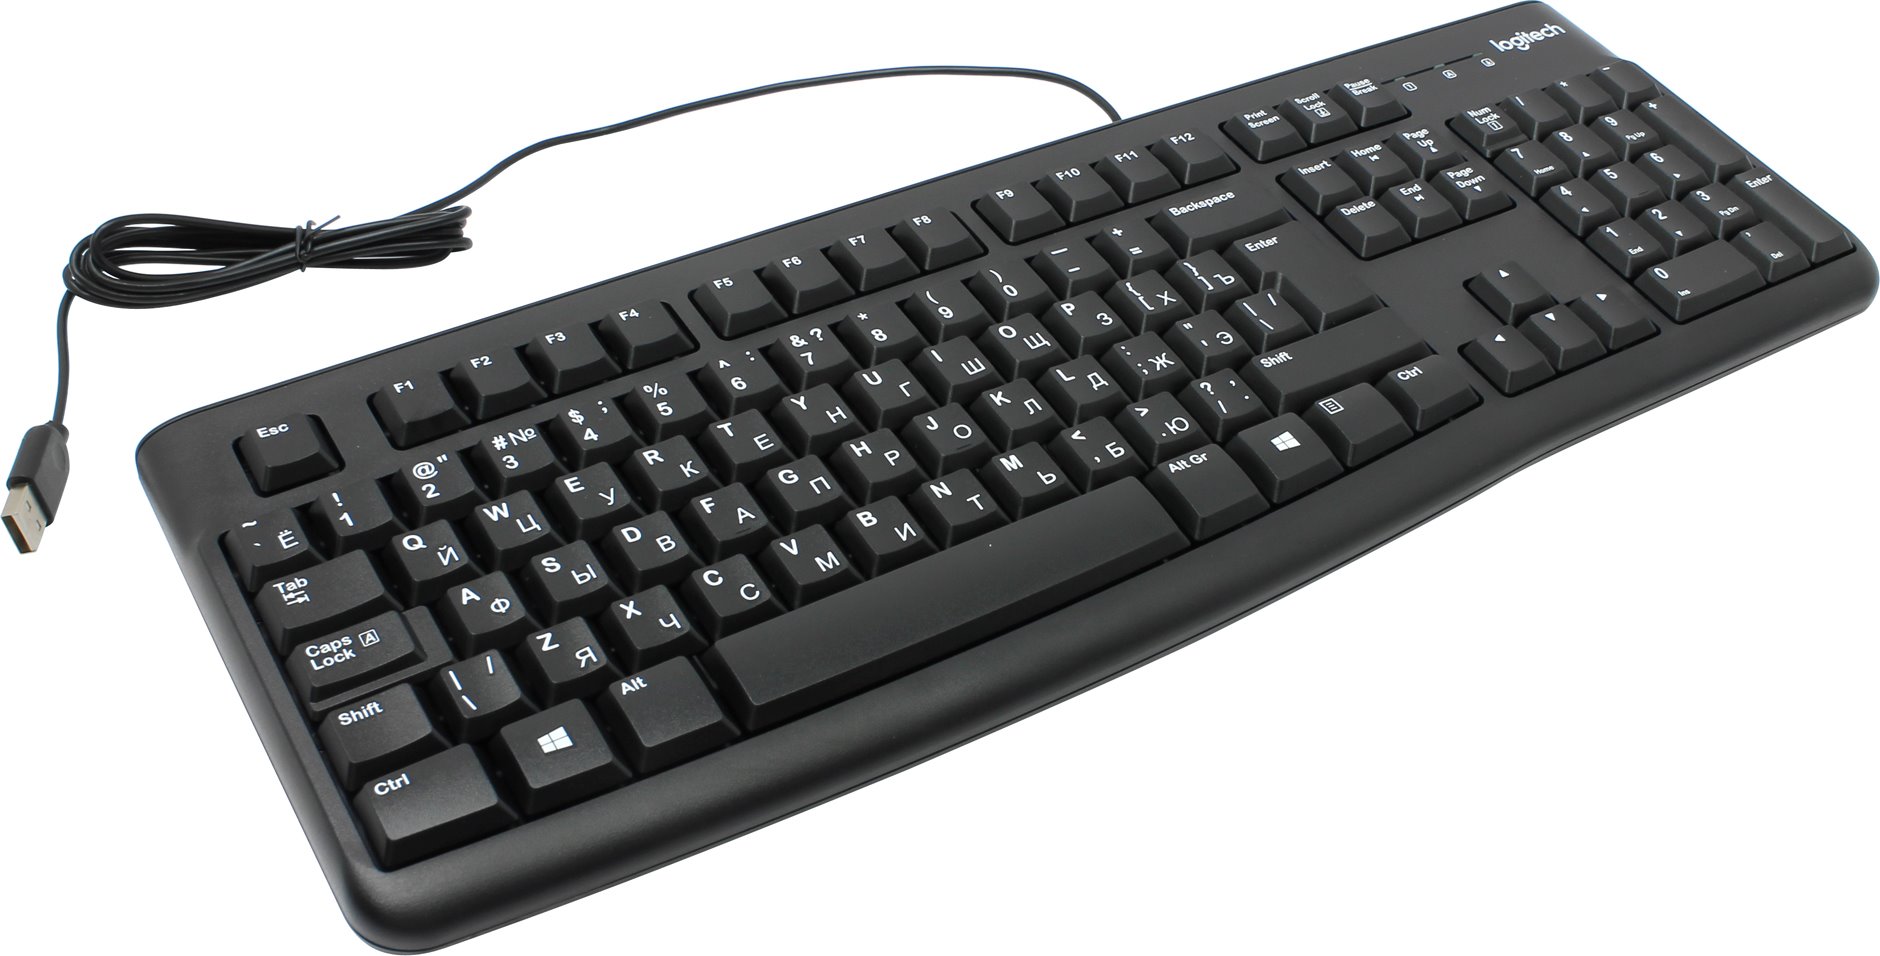 Keyboard for computers marat raduga